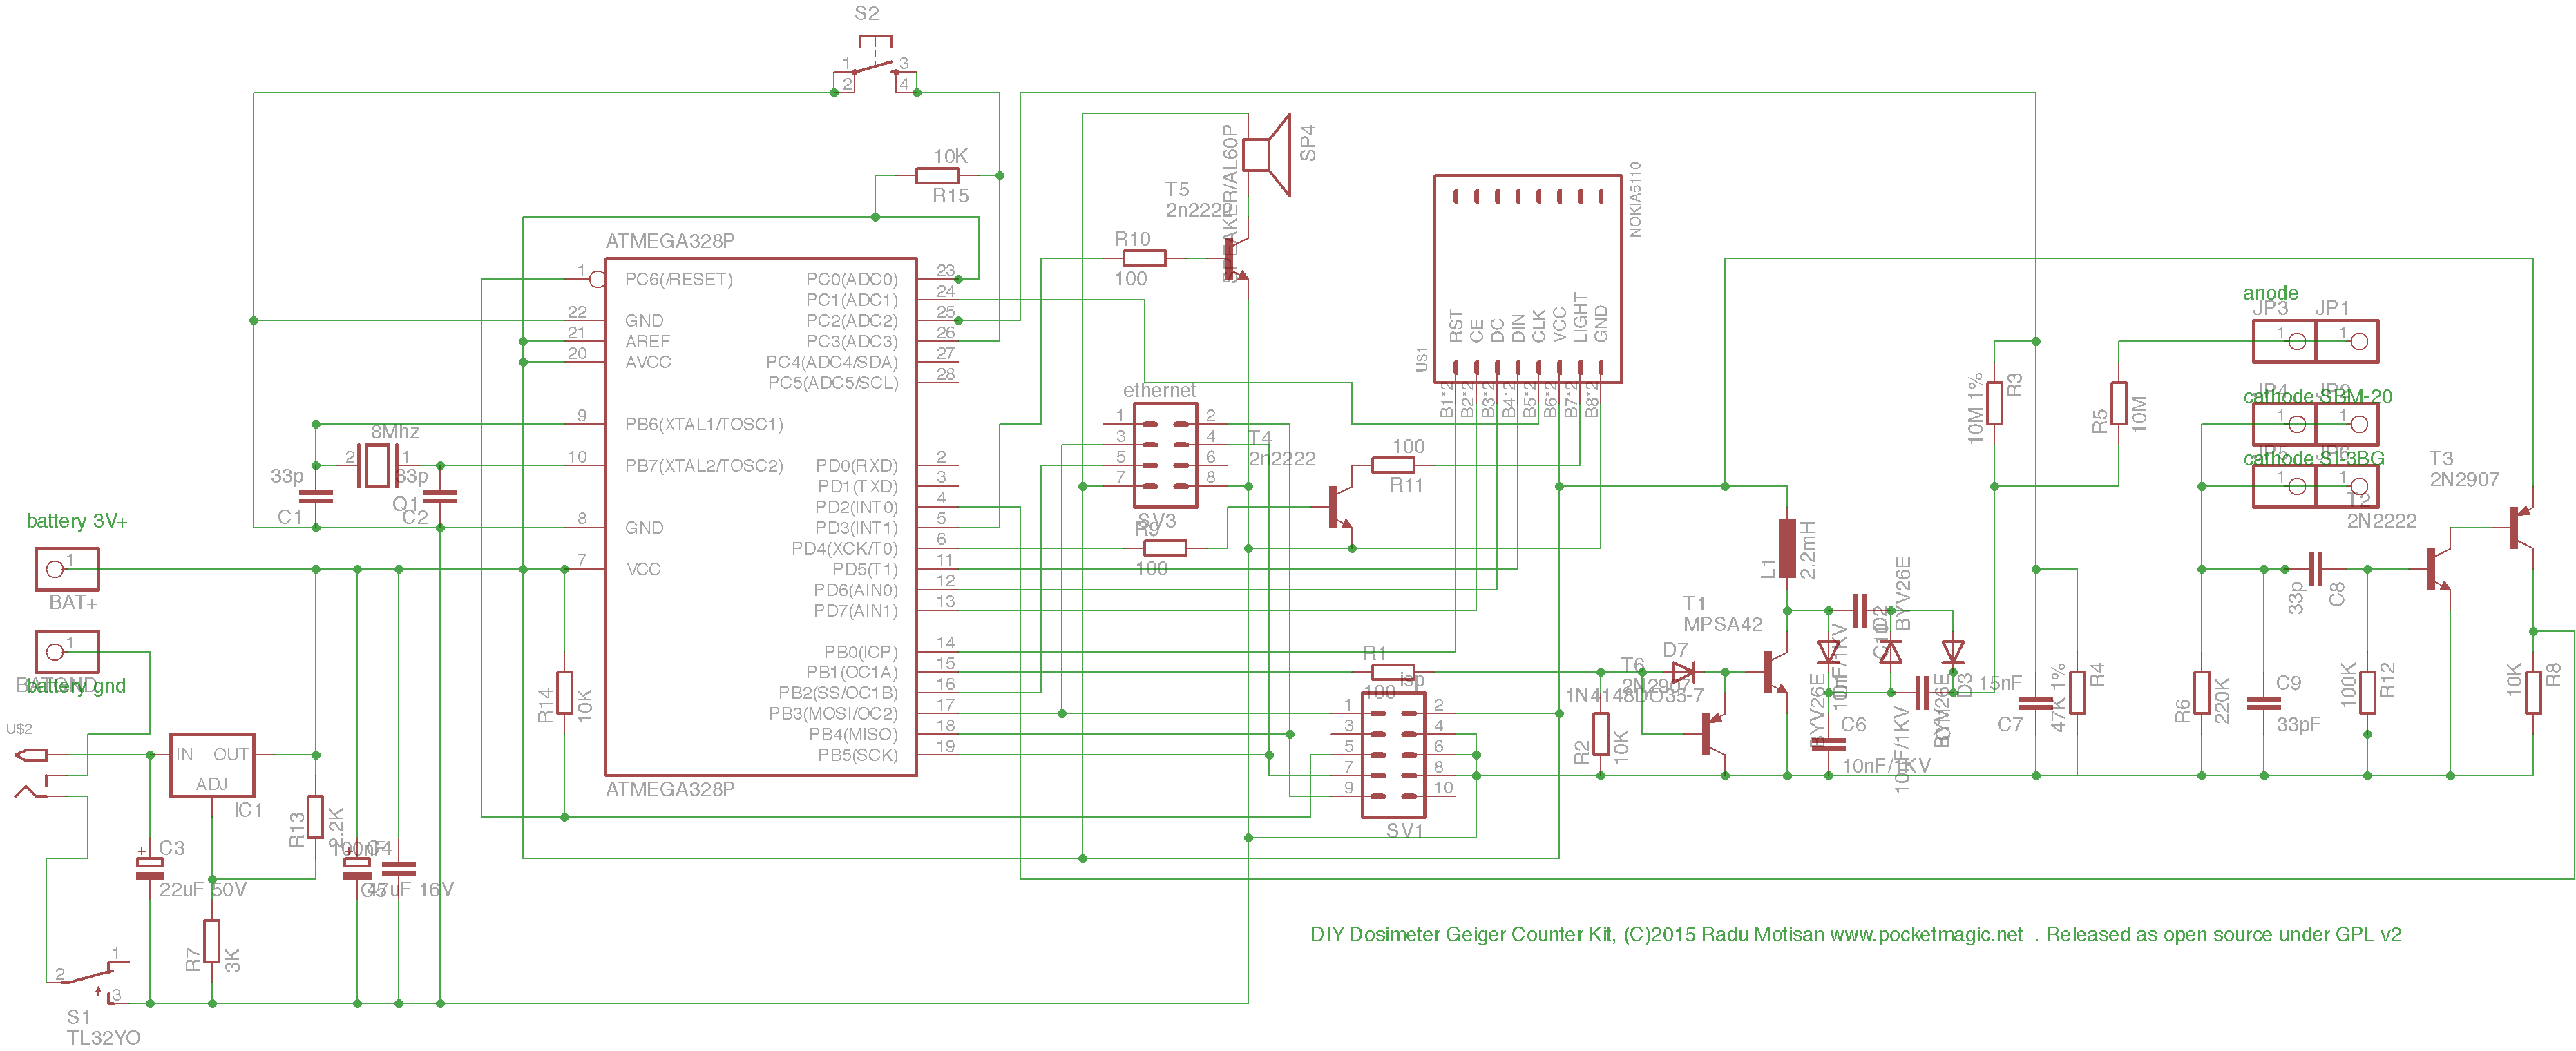 kit1 schematic